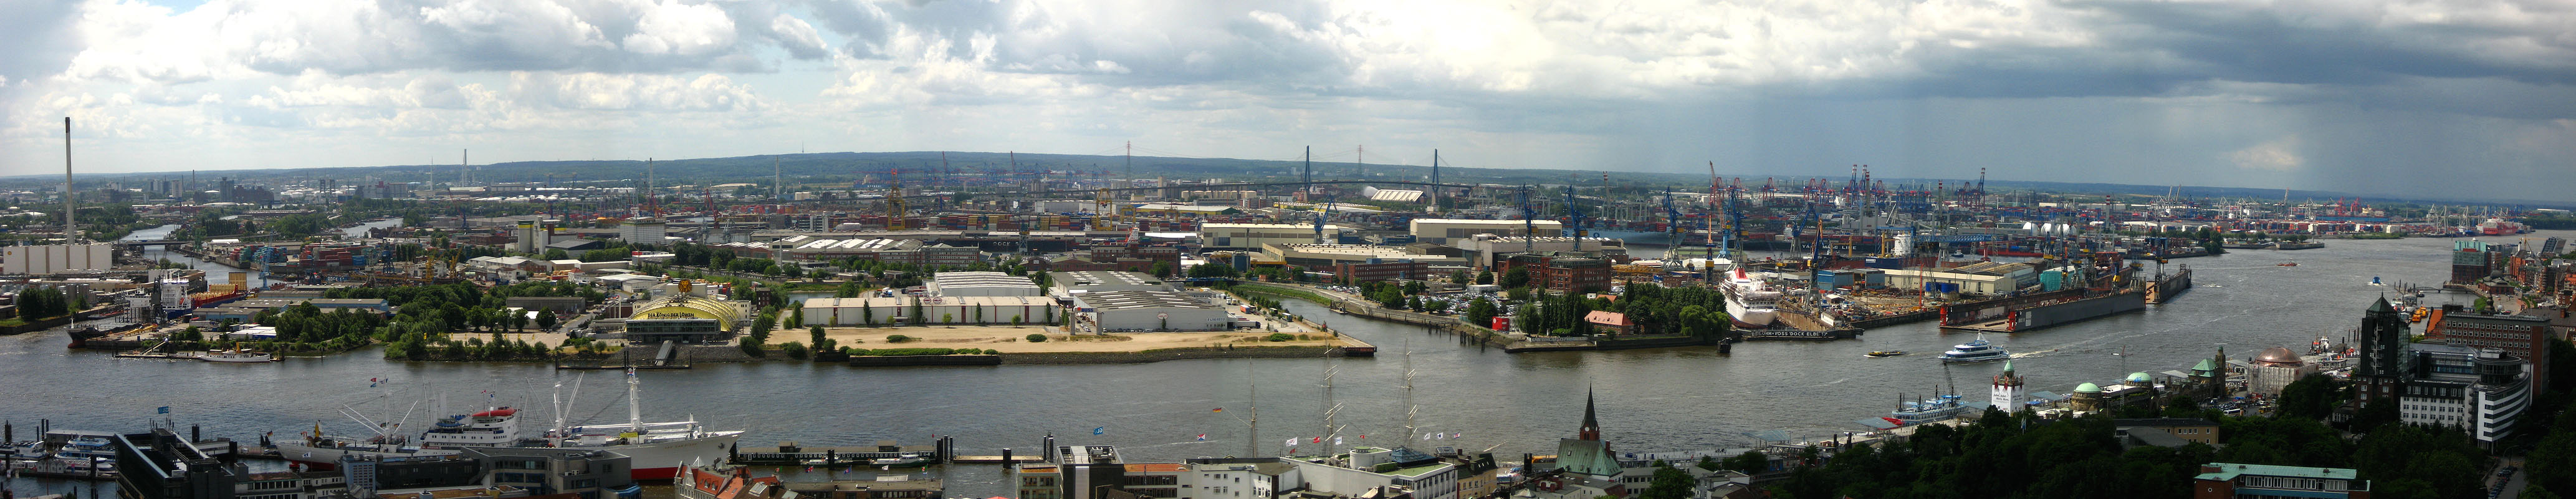 Hamburg kikötőjének egy részlete. Kattintson bele a panorámaképbe! (fotó: wikipédia)